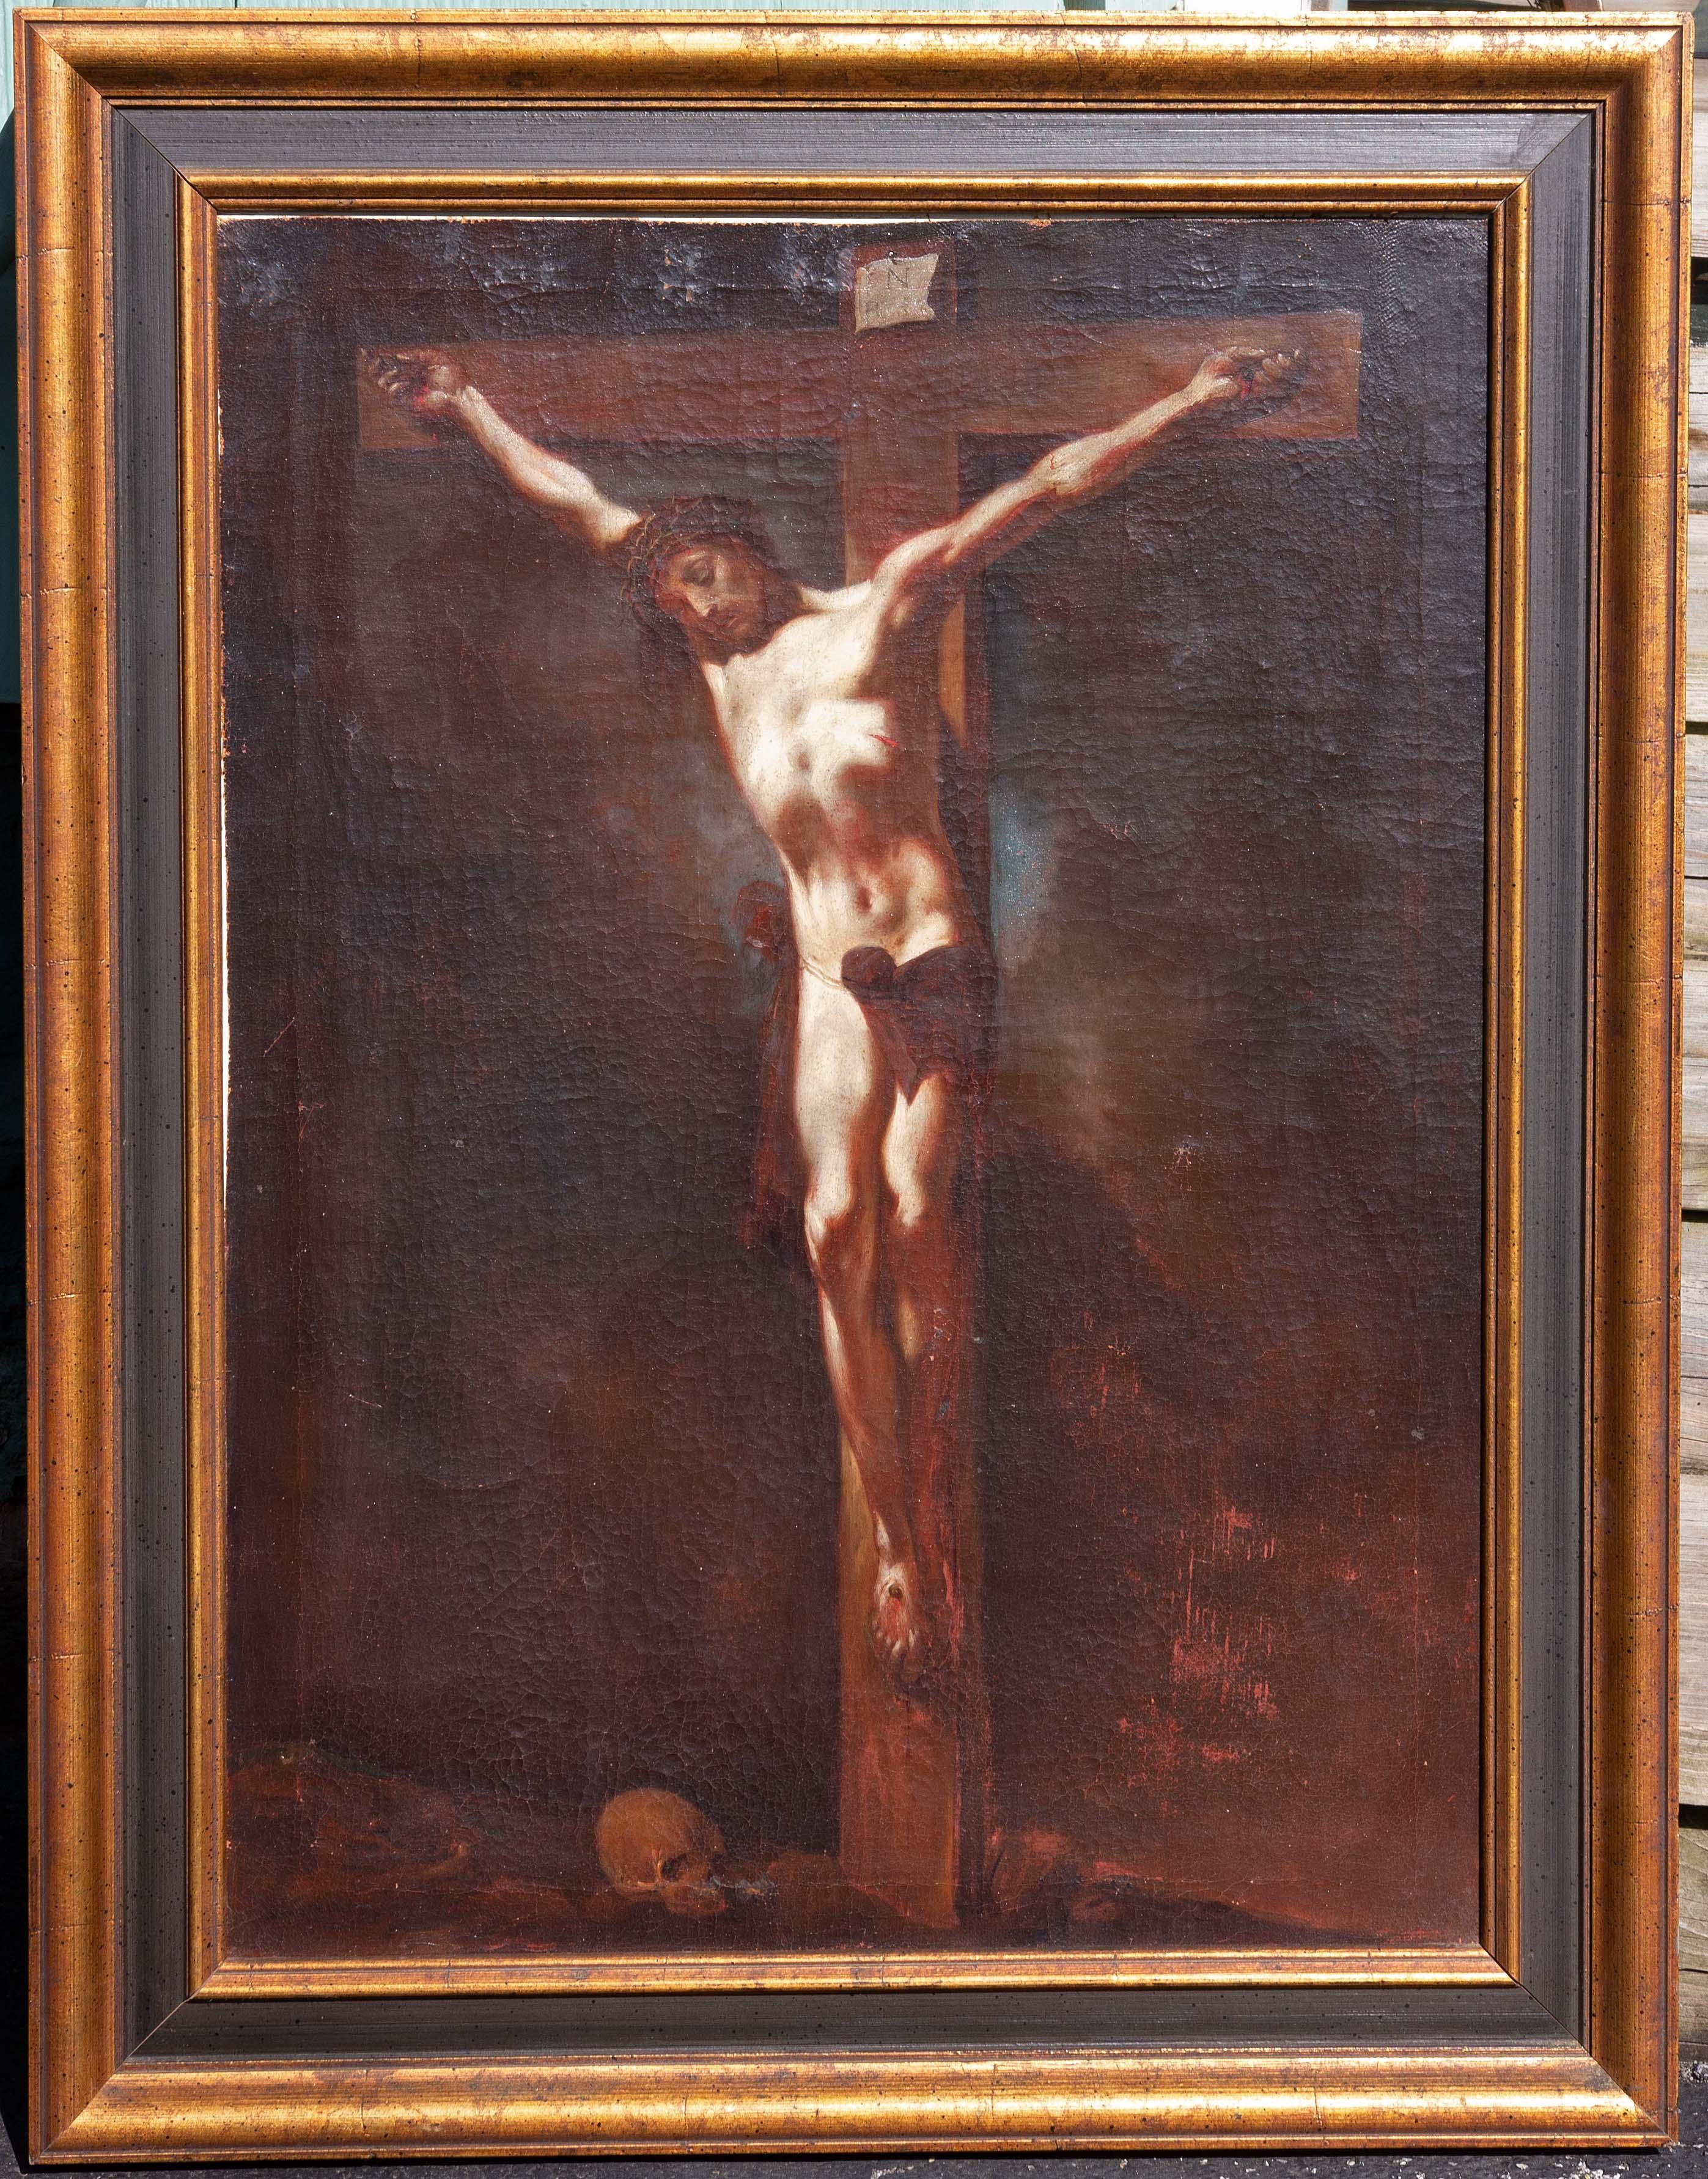 La crucifixion de Crist École italienne 17e ou 18e siècle. Les détails du visage et des mains sont magnifiques. L'éclairage donne l'impression que la figure de Crist brille. Dans un cadre ultérieur de bonne qualité.  
Présenté par Joseph Dasta